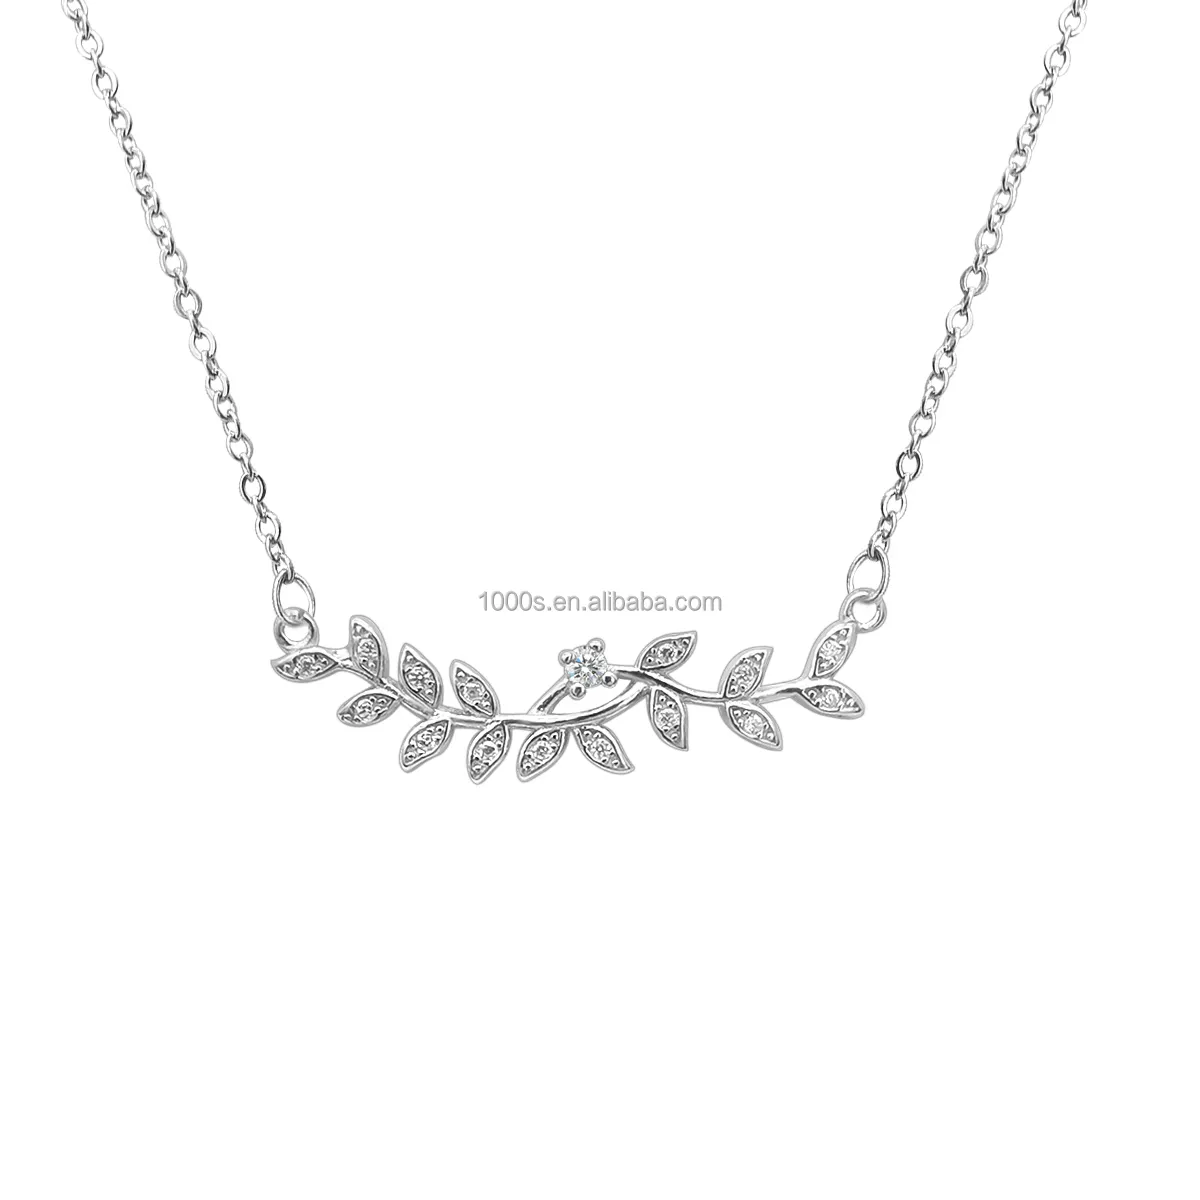 Özel basit tasarım 925 ayar gümüş zeytin dalı yaprak charm kolye kolye zinciri ile